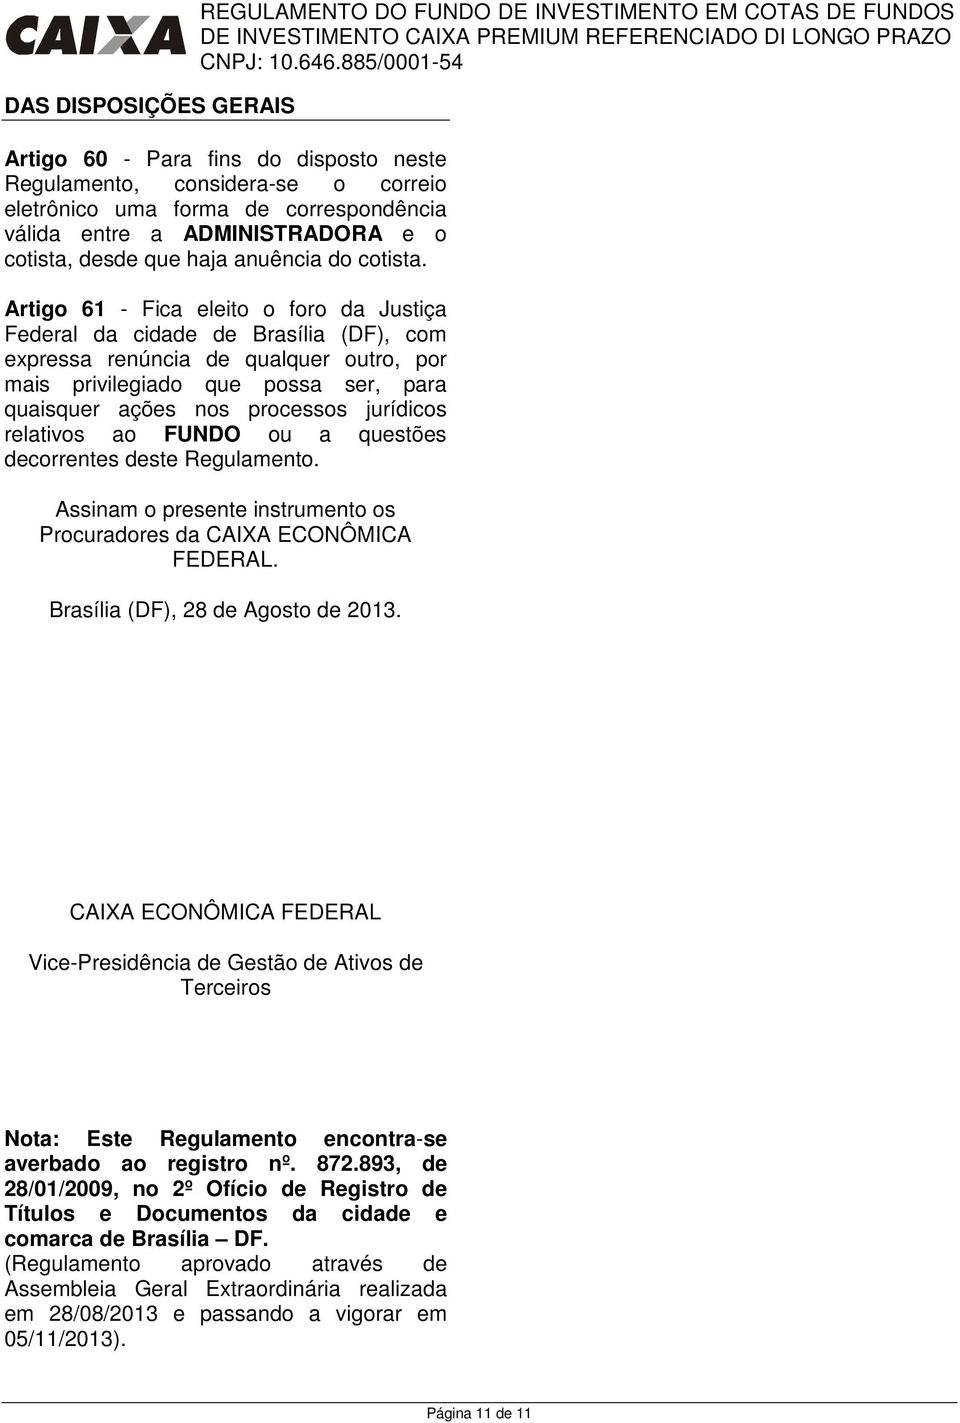 Artigo 61 - Fica eleito o foro da Justiça Federal da cidade de Brasília (DF), com expressa renúncia de qualquer outro, por mais privilegiado que possa ser, para quaisquer ações nos processos